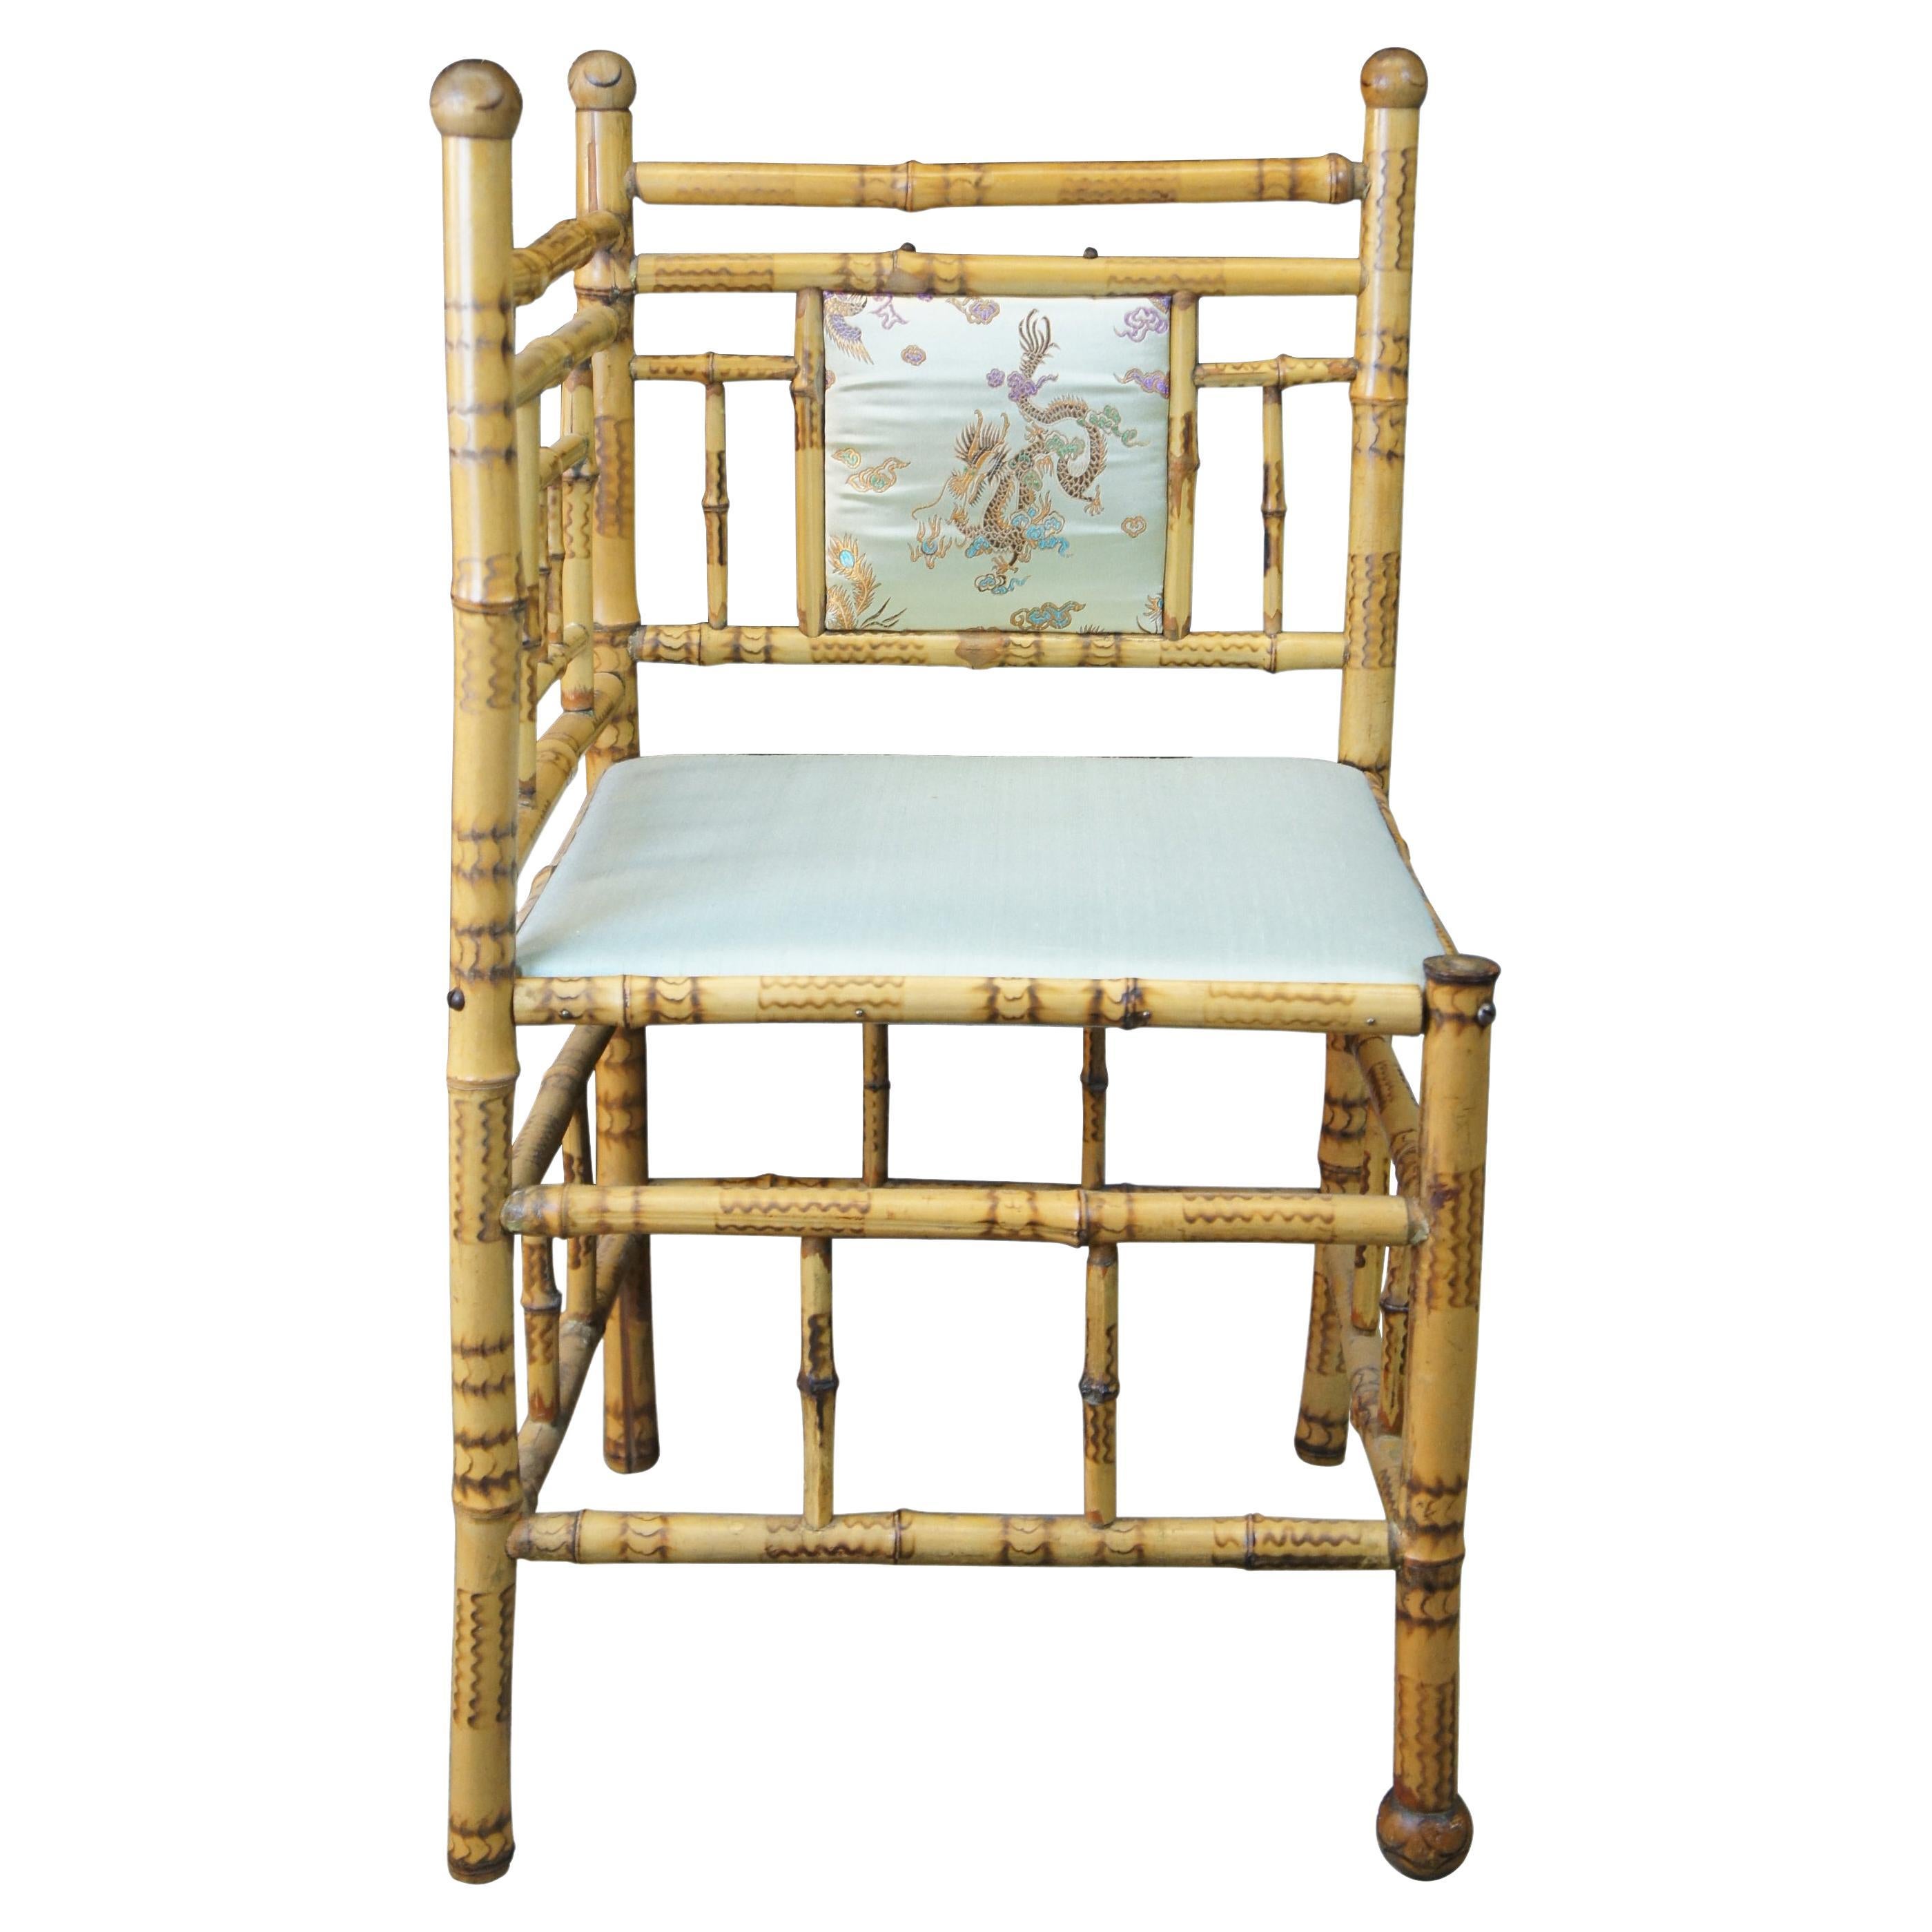 Ancienne chaise d'angle victorienne anglaise en bambou rembourrée d'un siège en soie avec scène de dragon